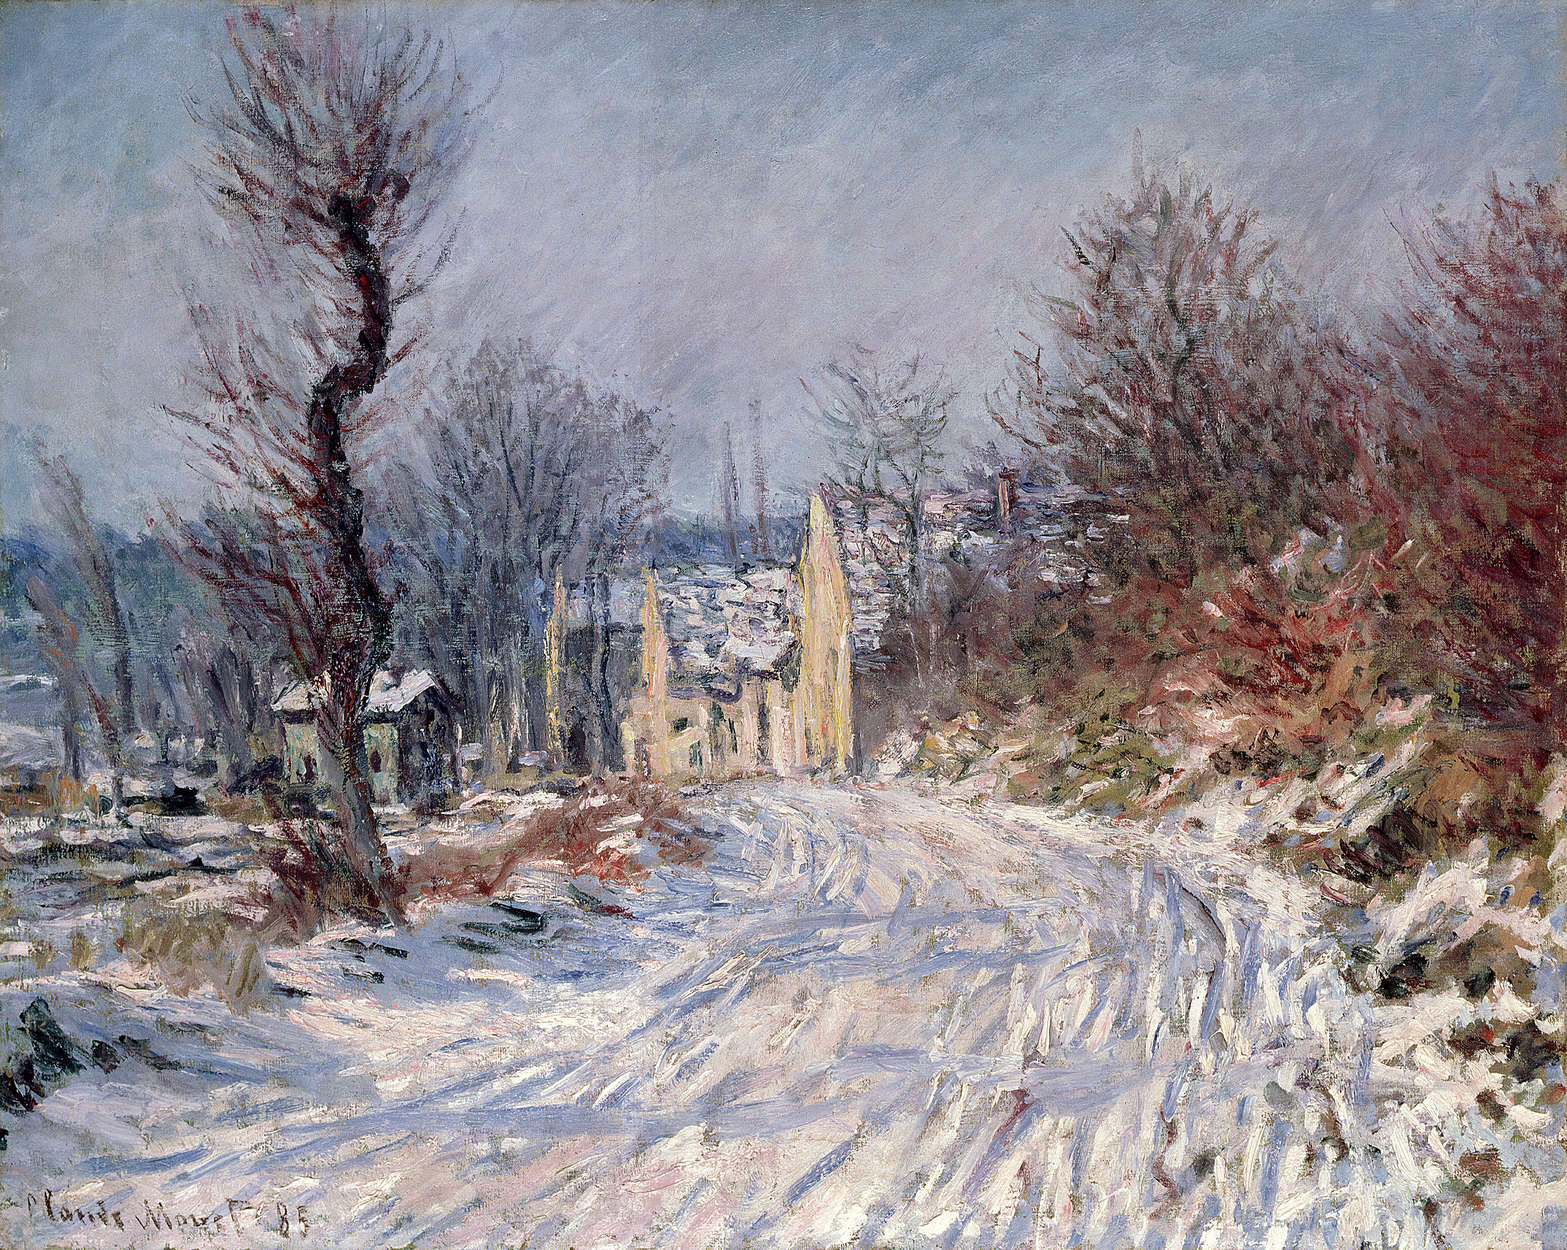             Papier peint panoramique "La route de Giverny" de Claude Monet
        